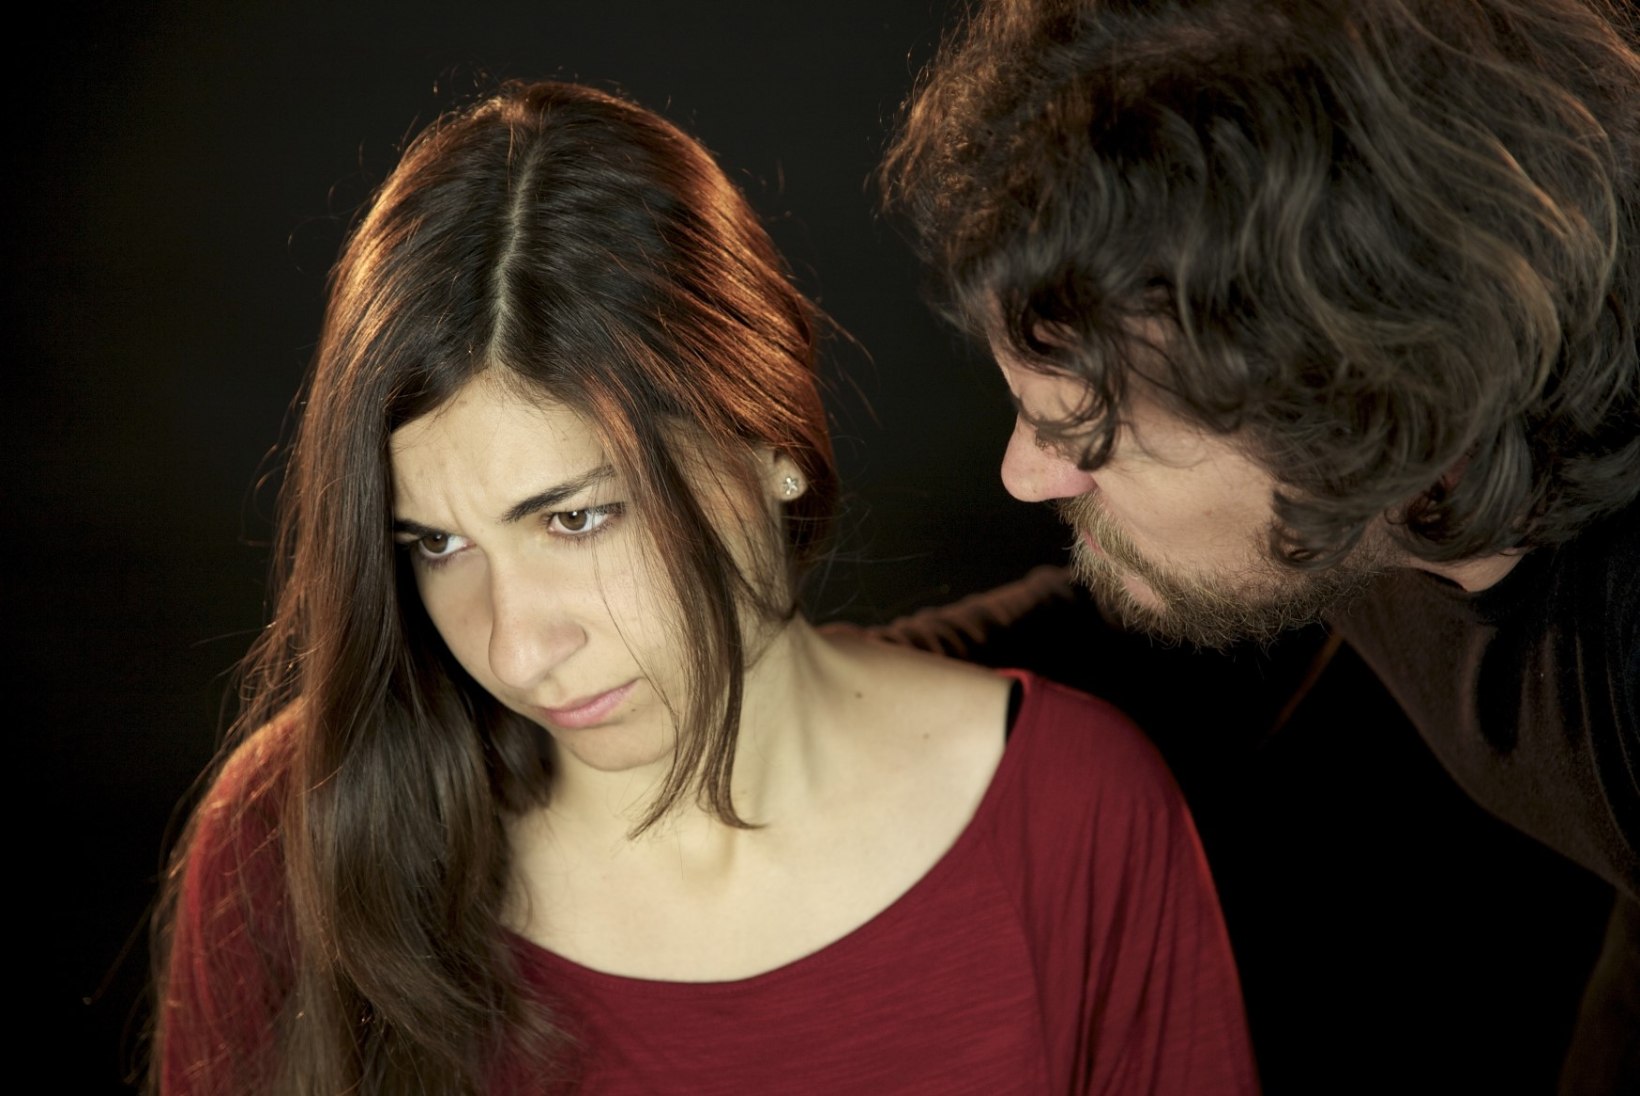 Kui mees lööb naist: 6 taktikat, millega partnerit kontrollitakse